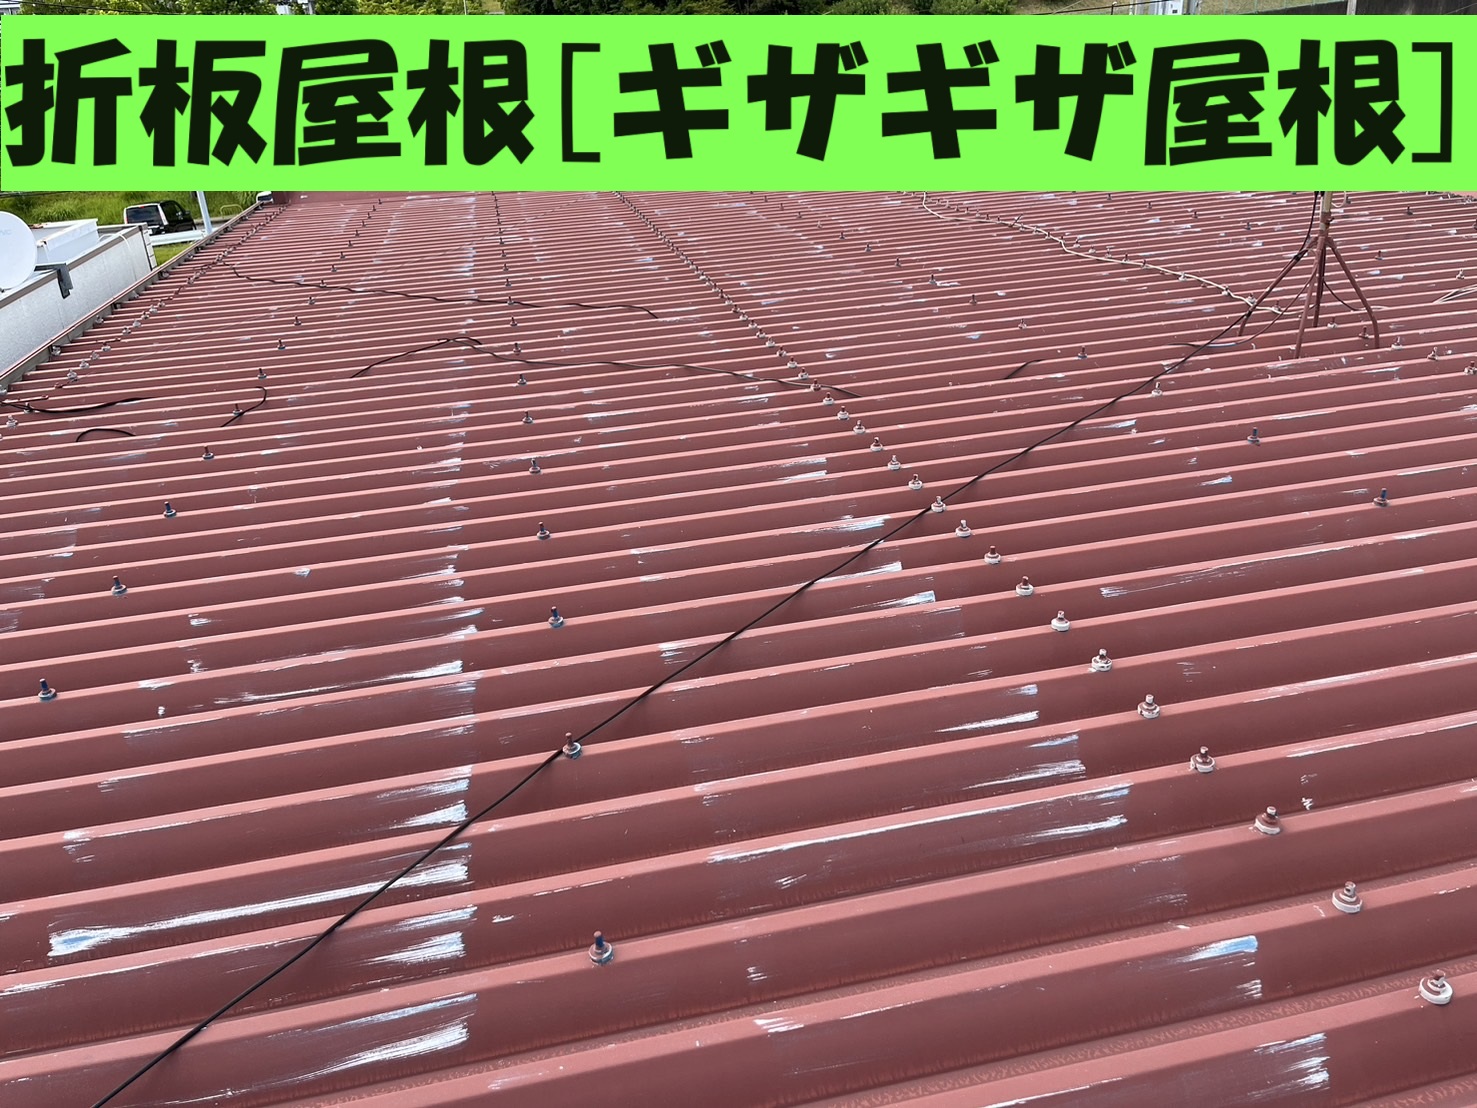 木曽岬町にて折板屋根[ギザギザ屋根]の塗装劣化とコーキング劣化により雨漏れ！